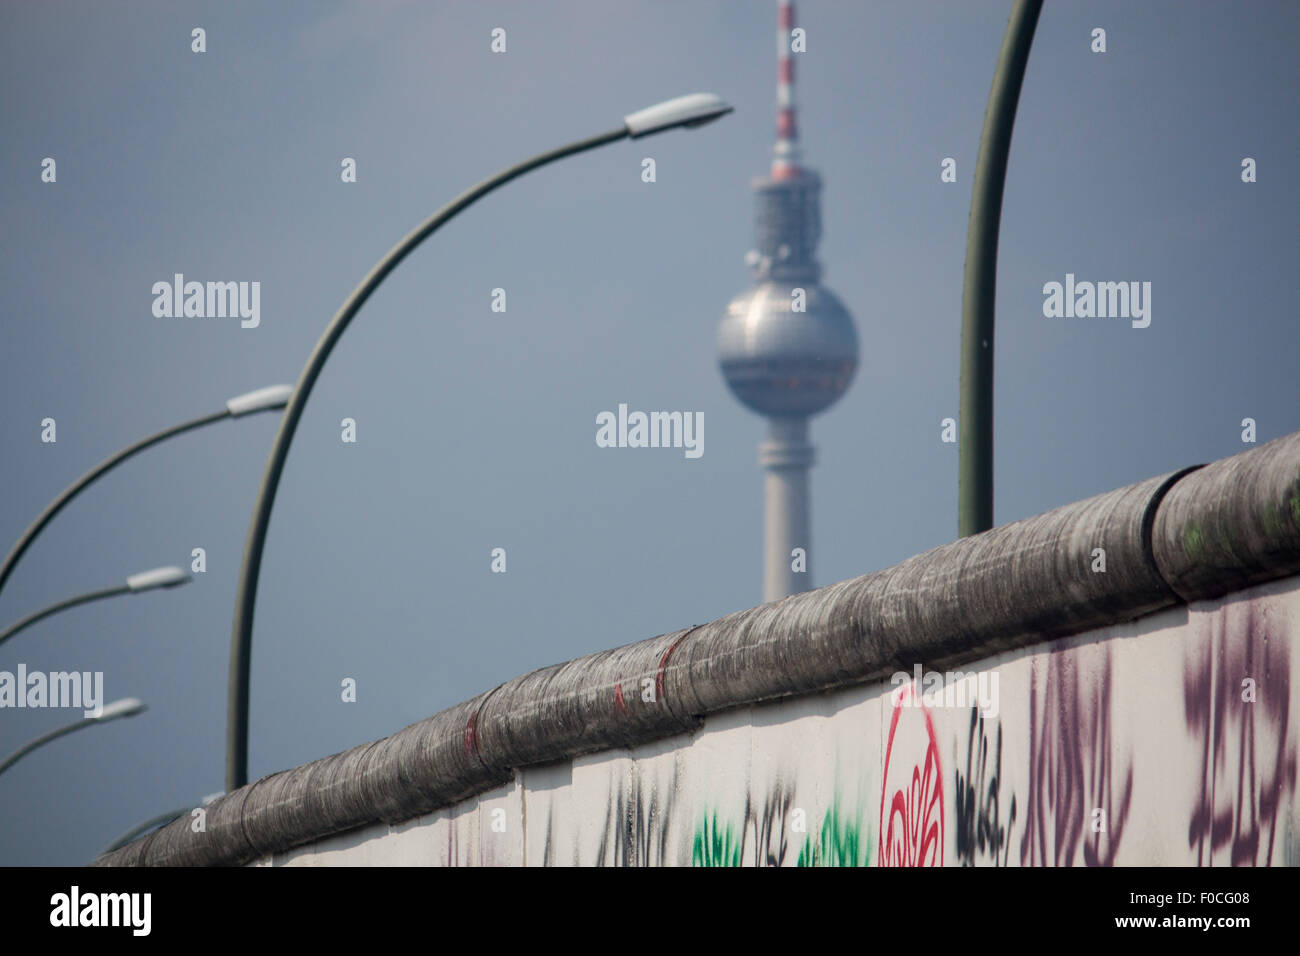 La section de mur de Berlin Berliner Mauer et Fernsehturm, la tour de télévision anciens symboles de ville divisée Guerre Froide Berlin Allemagne Banque D'Images